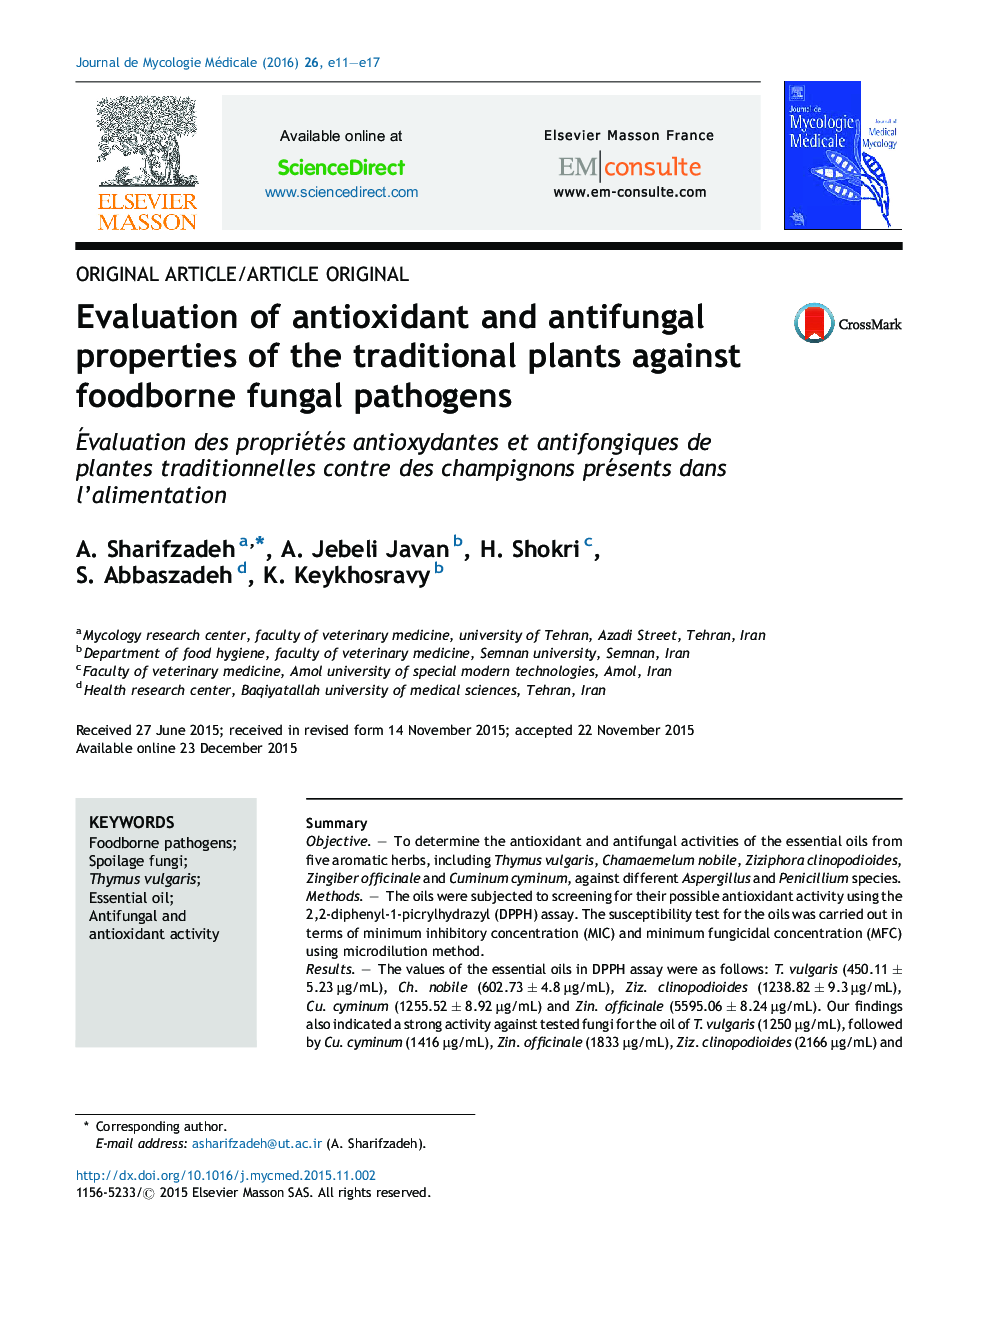 ارزیابی خواص آنتی اکسیدانی و ضد قارچی گیاهان سنتی علیه پاتوژن های قارچی مواد غذایی 